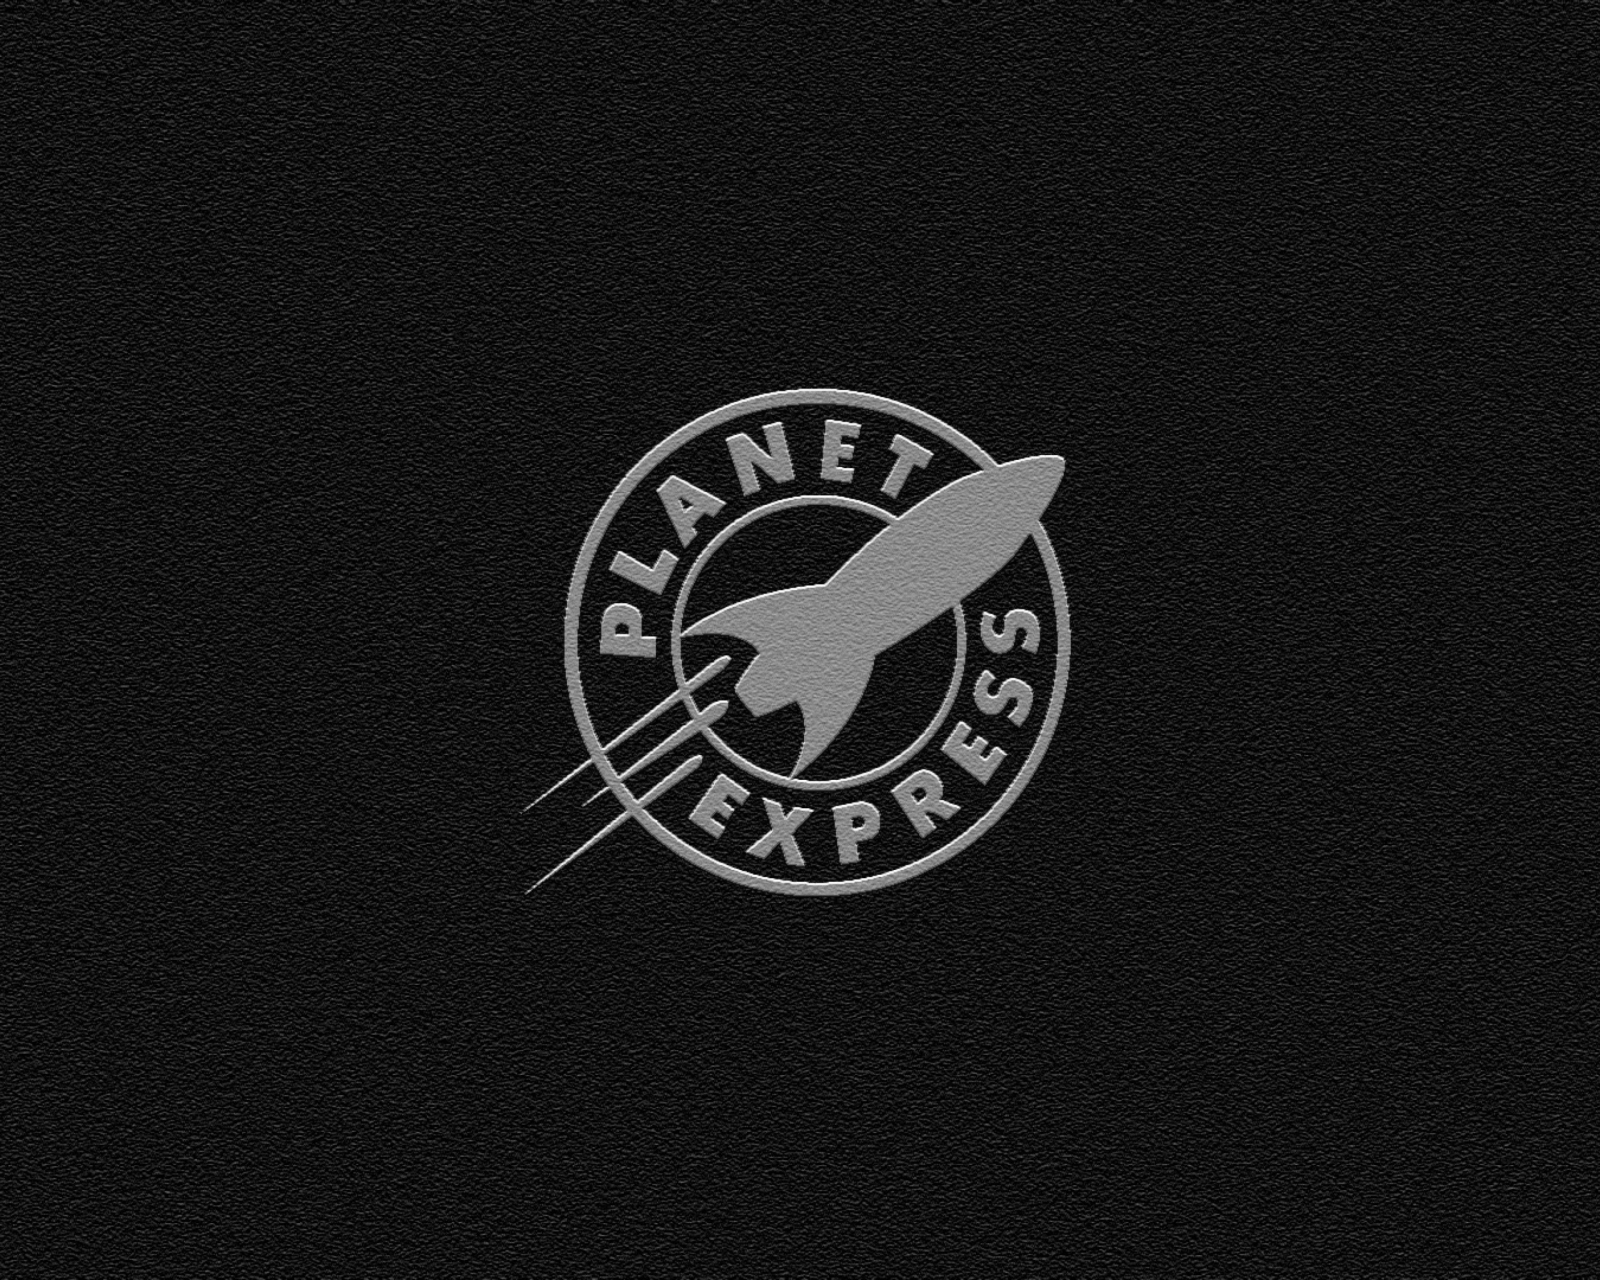 Обои Planet Express 1600x1280